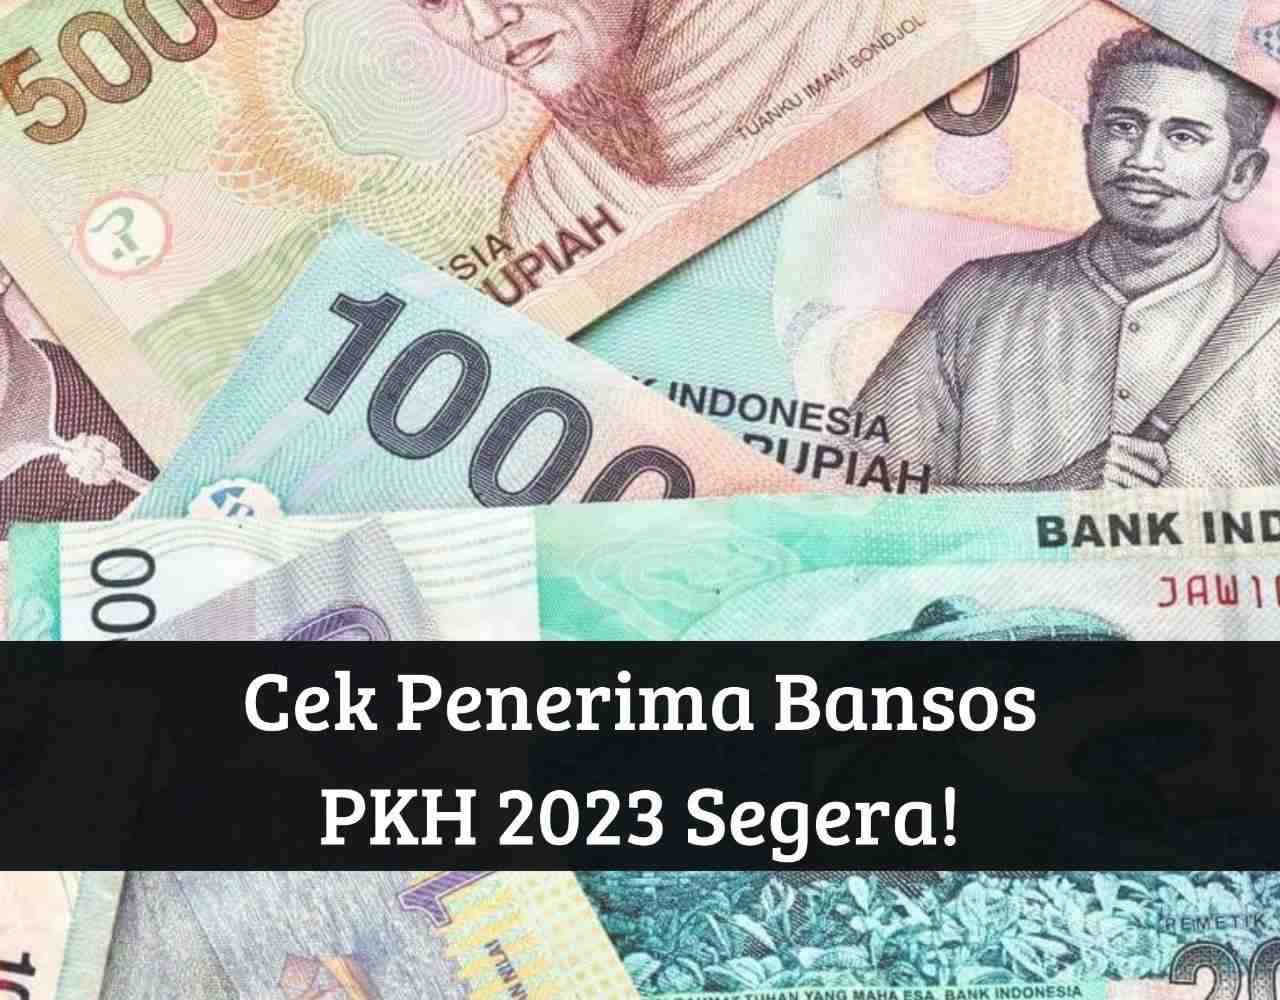 Langsung Cek Penerima! Bansos PKH September 2023 Cair ke Rekening, Segera Login Link cekbansos.kemensos.go.id